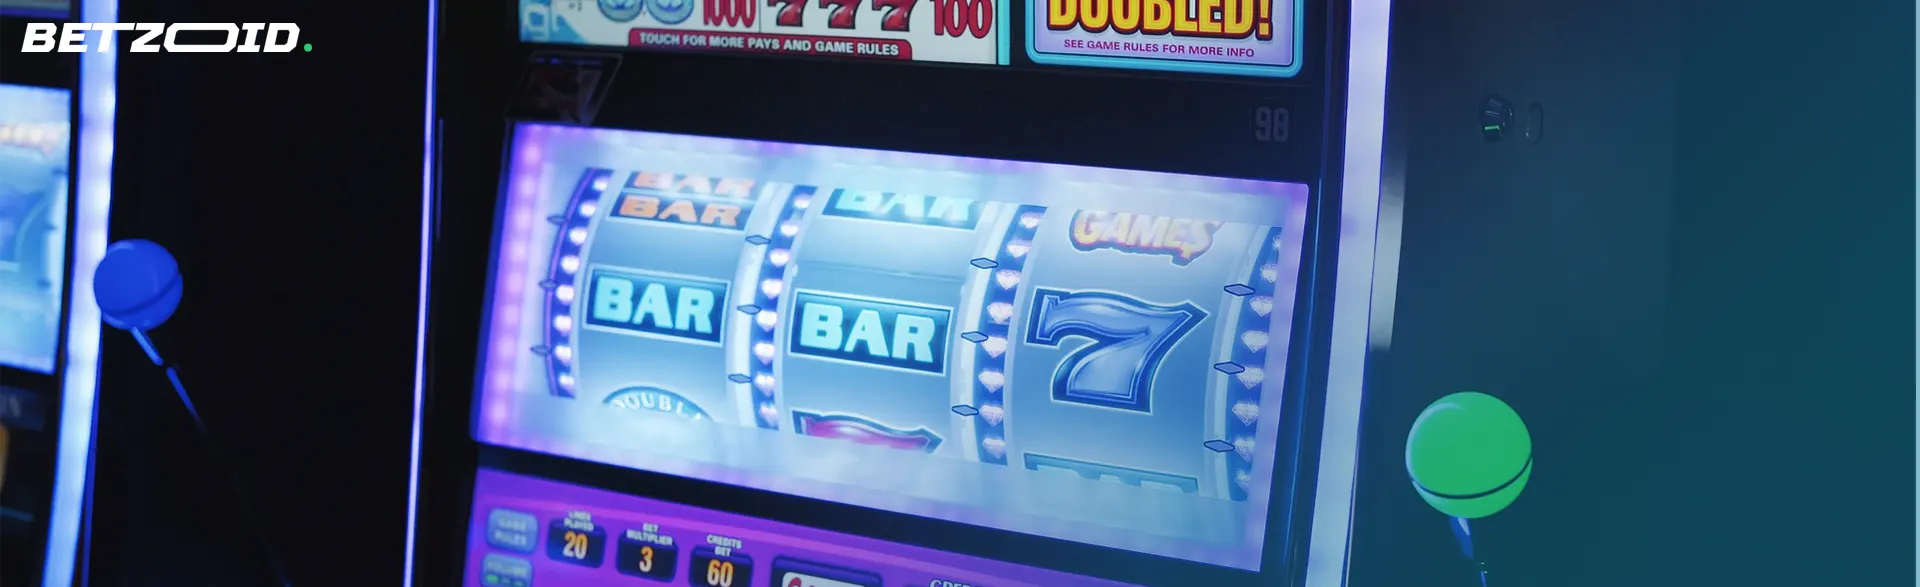 Slots bar at download casinos.